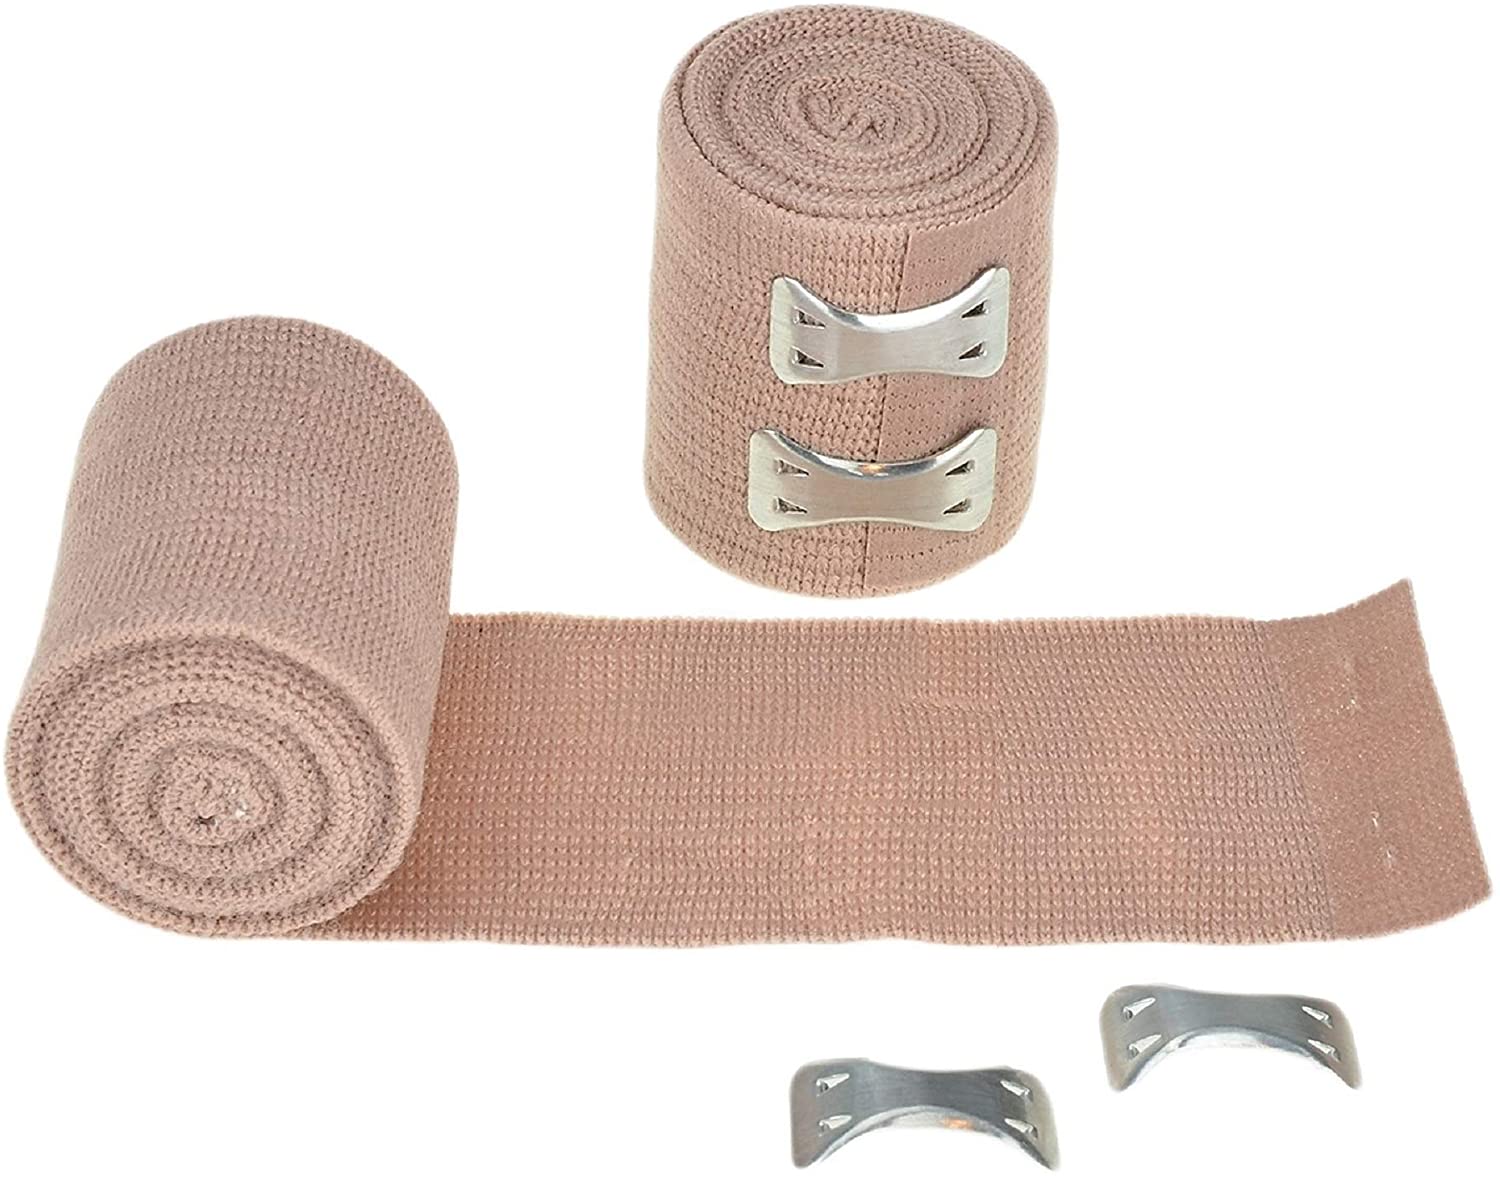 Bende sportive elastiche allungate a compressione con chiusura a clip